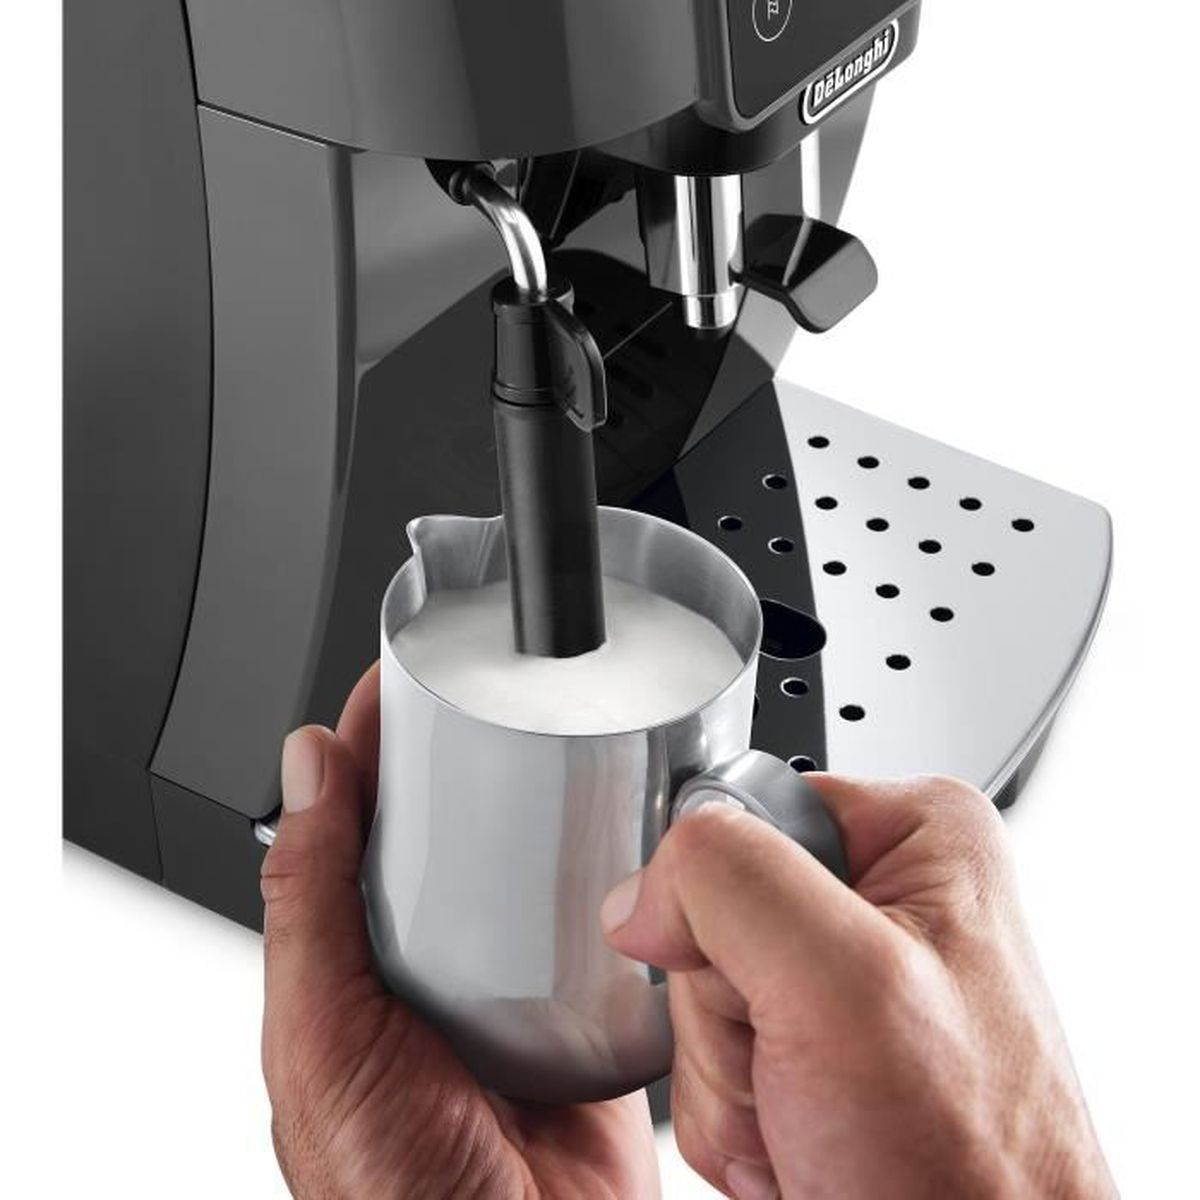 ECAM220.22.GB LONGHI Coffee Grigio makers DE